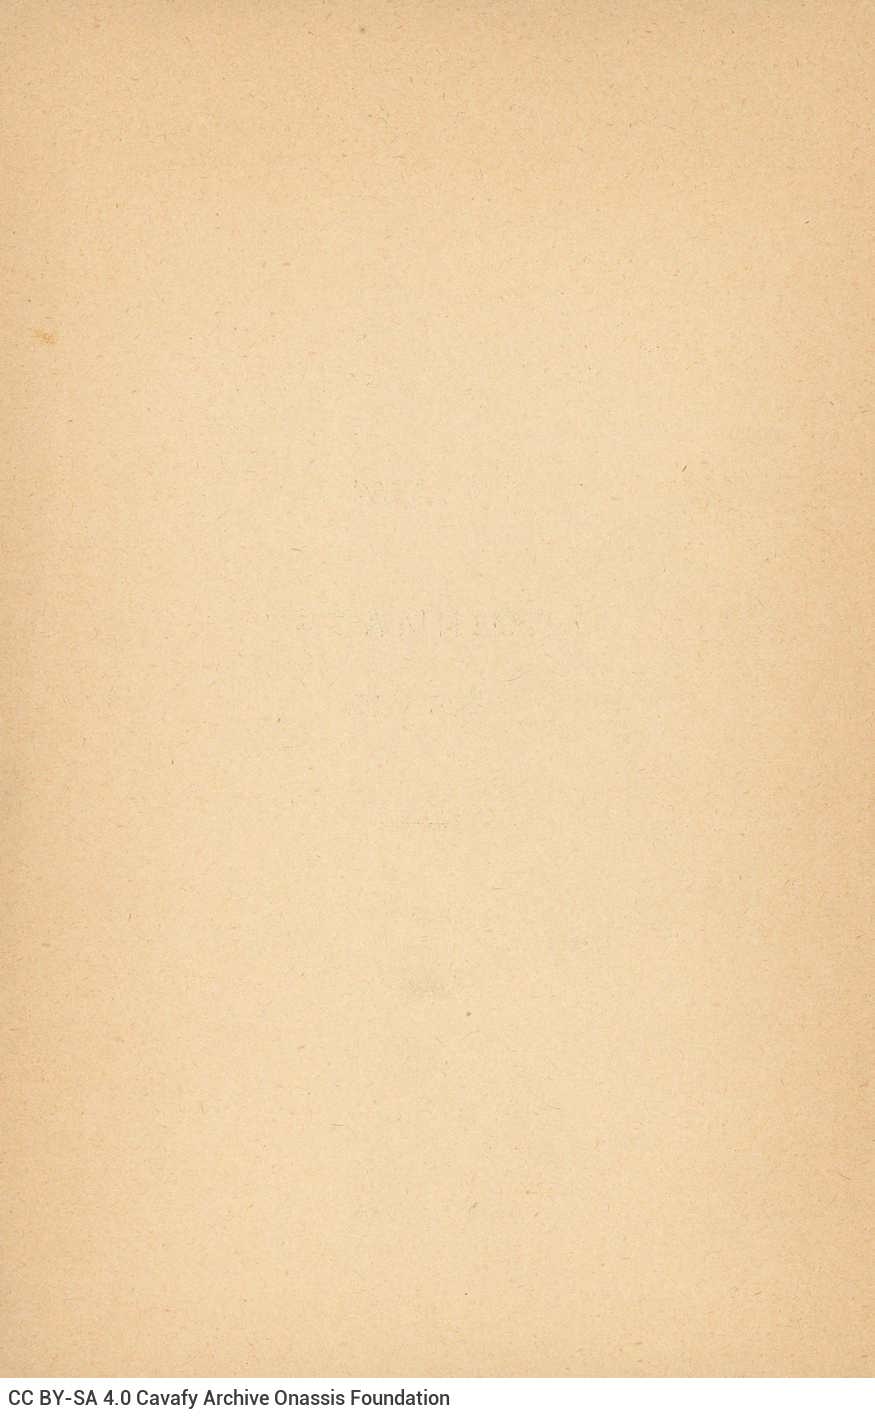 Ποιητική συλλογή του Καβάφη (Γ10). Στο εξώφυλλο και στη σελίδα τίτλου �